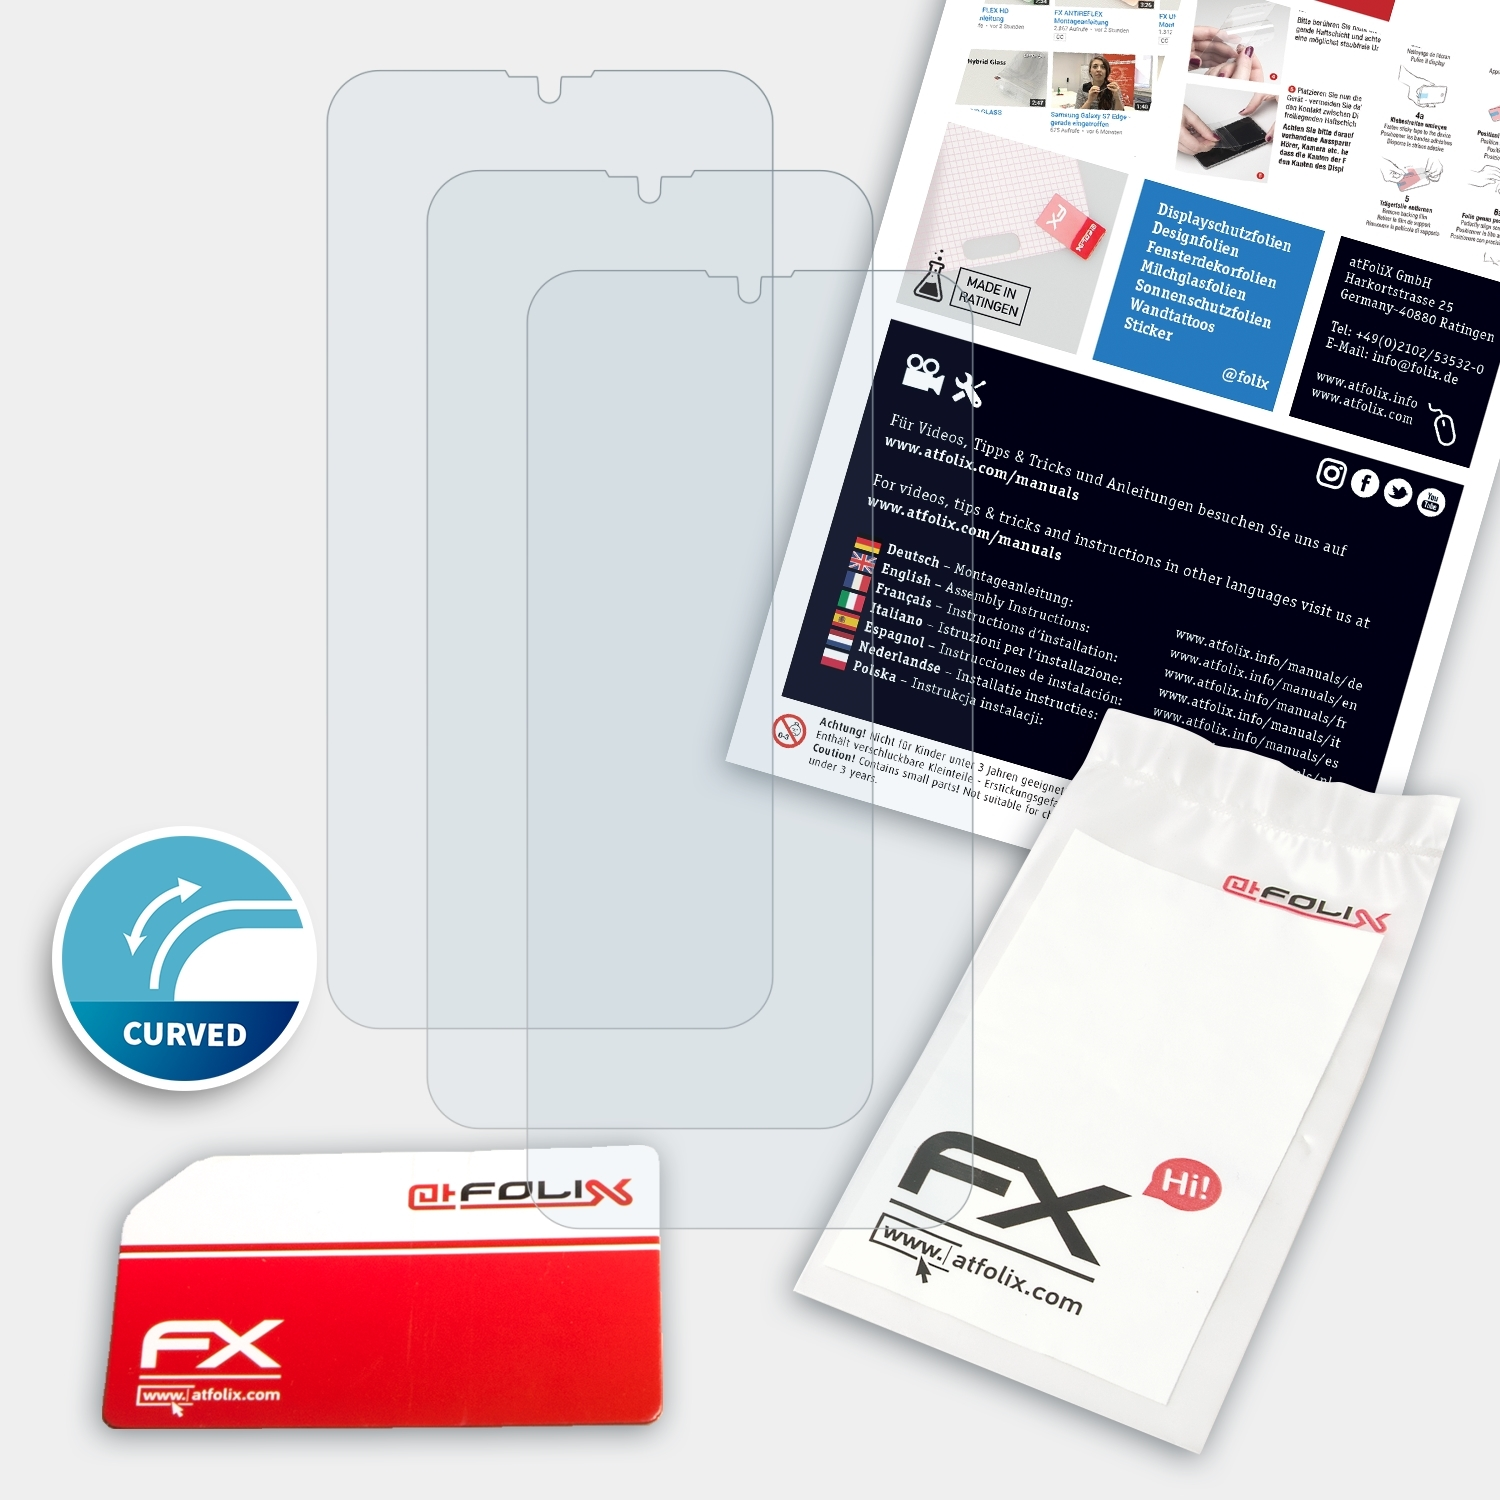 ATFOLIX 3x FX-ActiFleX Displayschutz(für Oppo Realme X2)